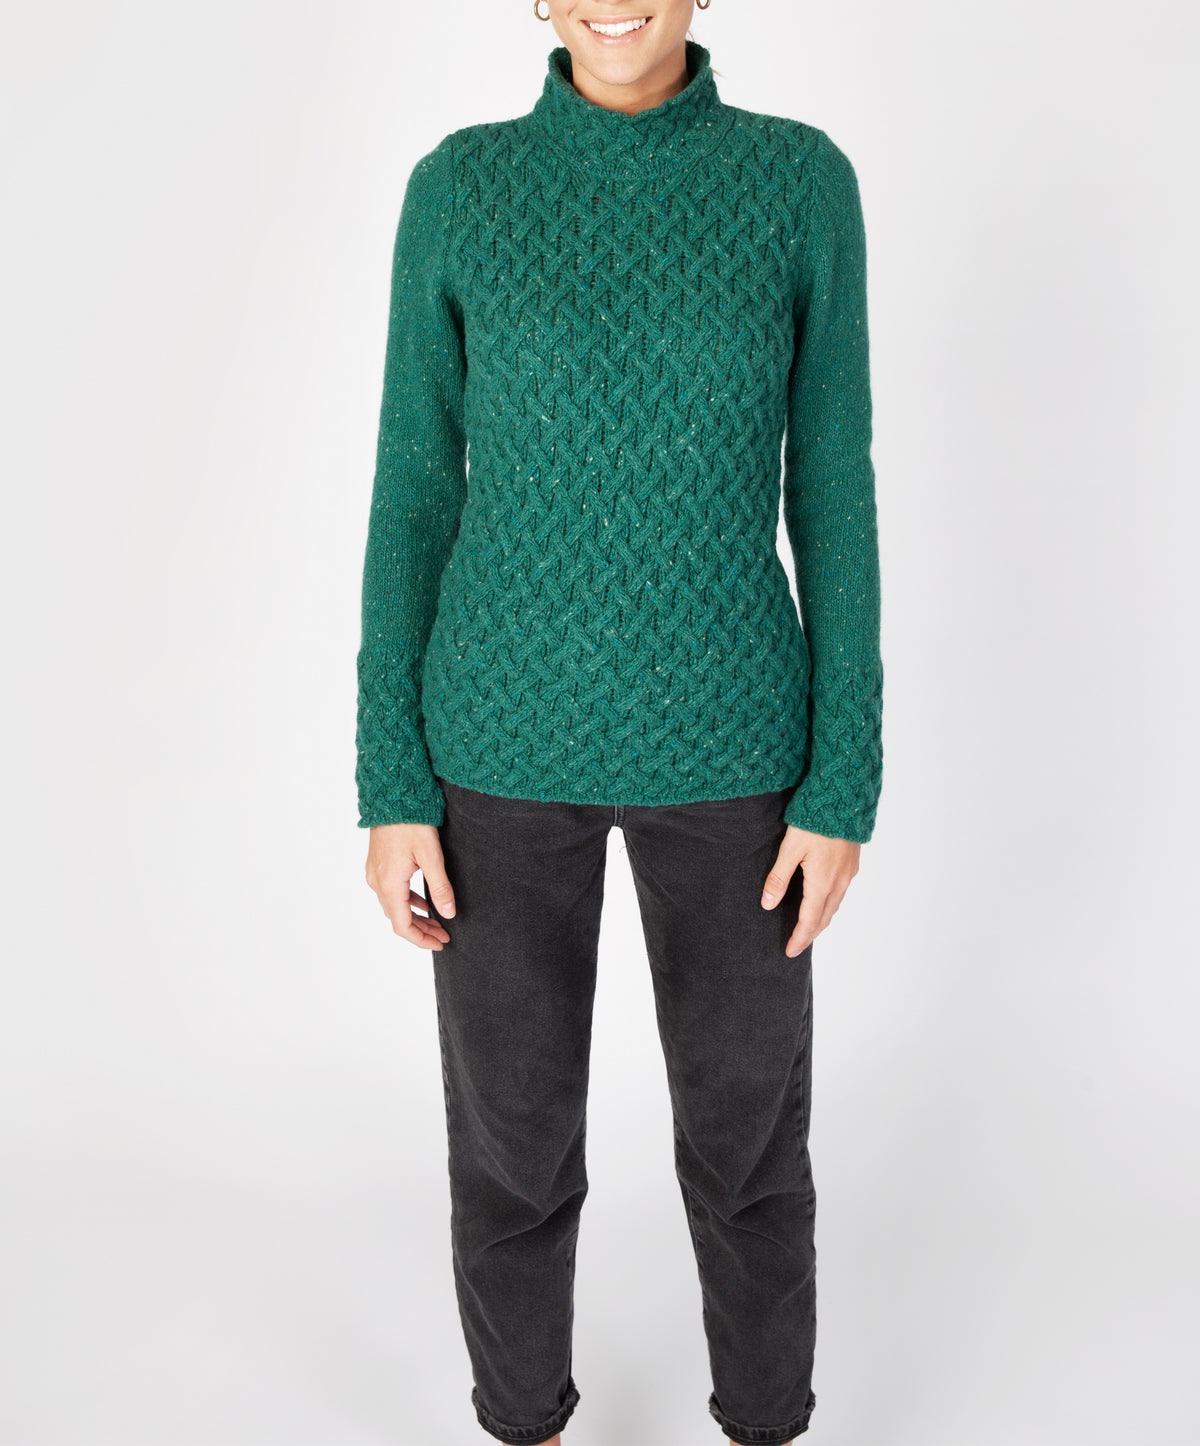 IrelandsEye Knitwear Trellis Sweater Green Garden